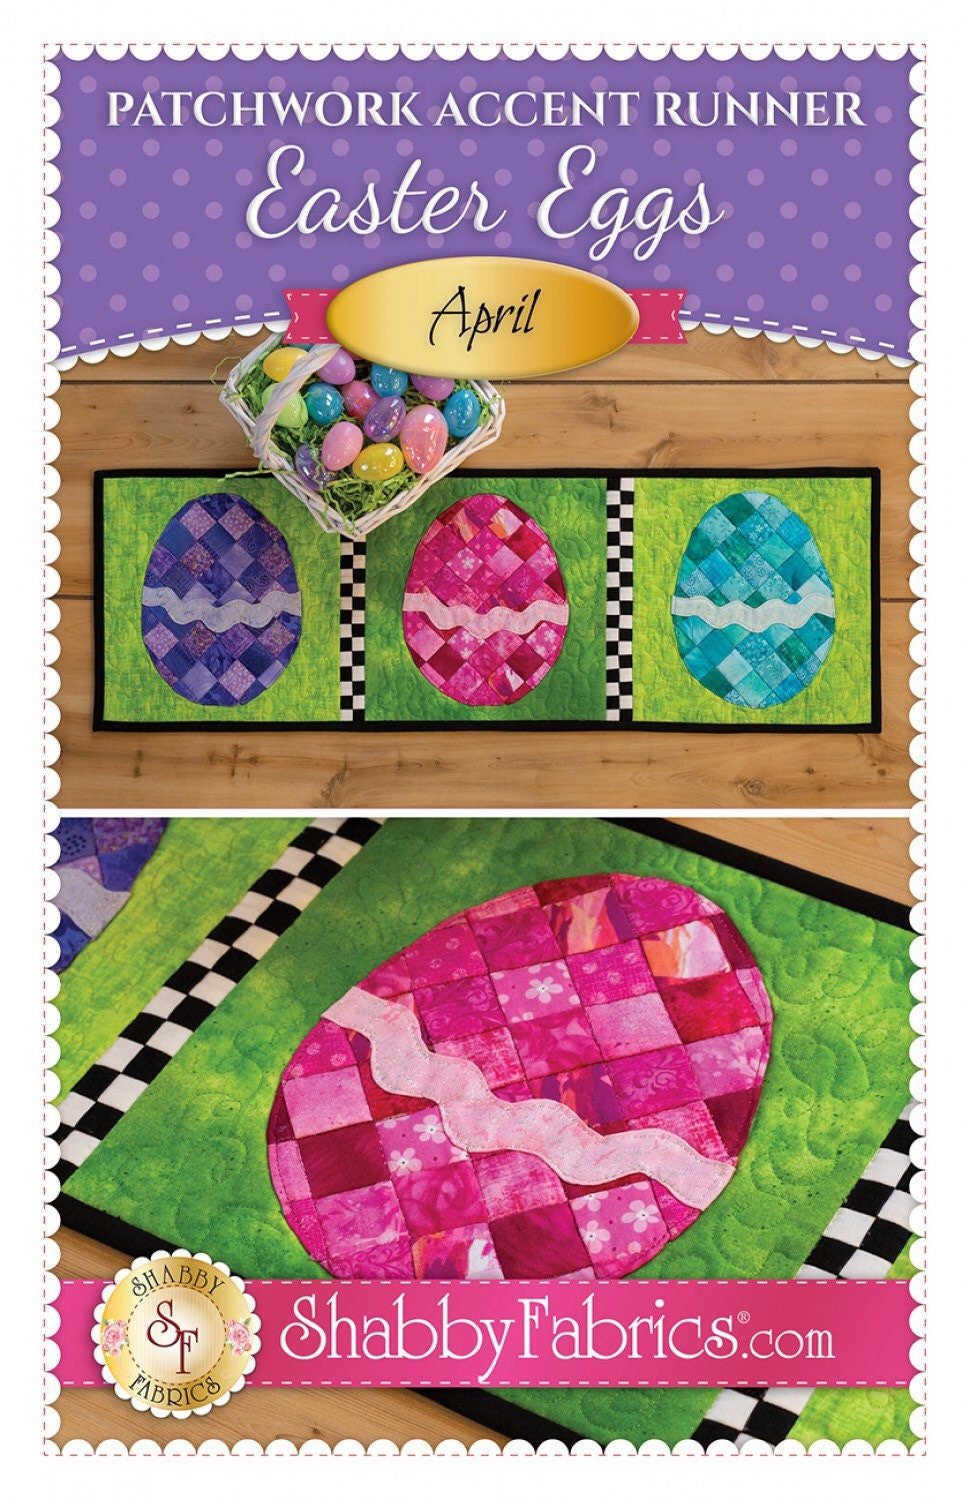 Patchwork Accent Runner Easter Eggs April - Shabby Fabrics - Jennifer Bosworth - Easter Table Runner Pattern